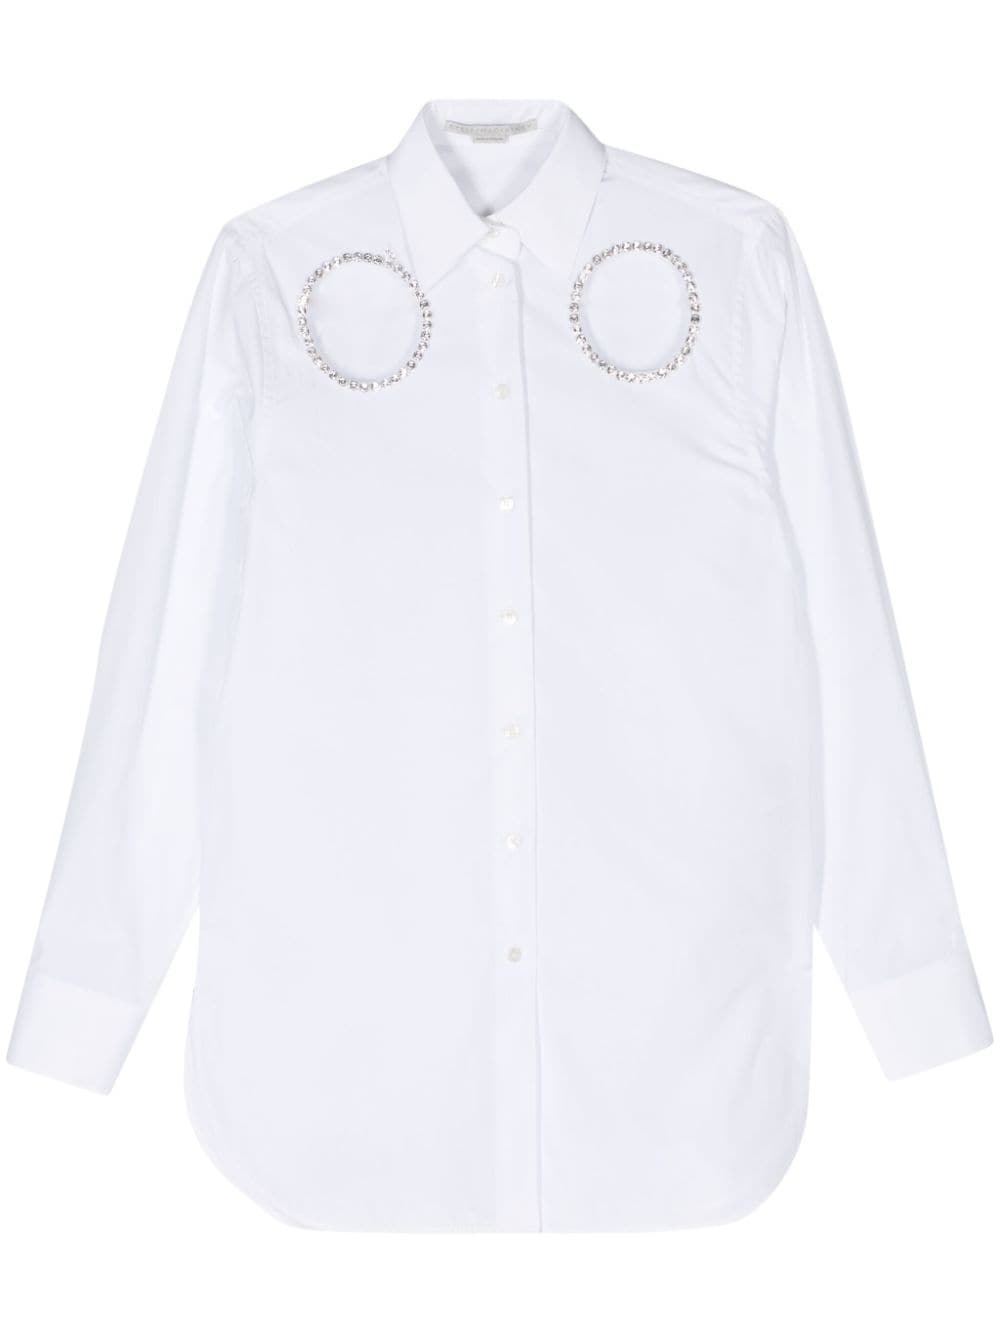 Stella McCartney Sweatshirt mit Kristallen - Weiß von Stella McCartney